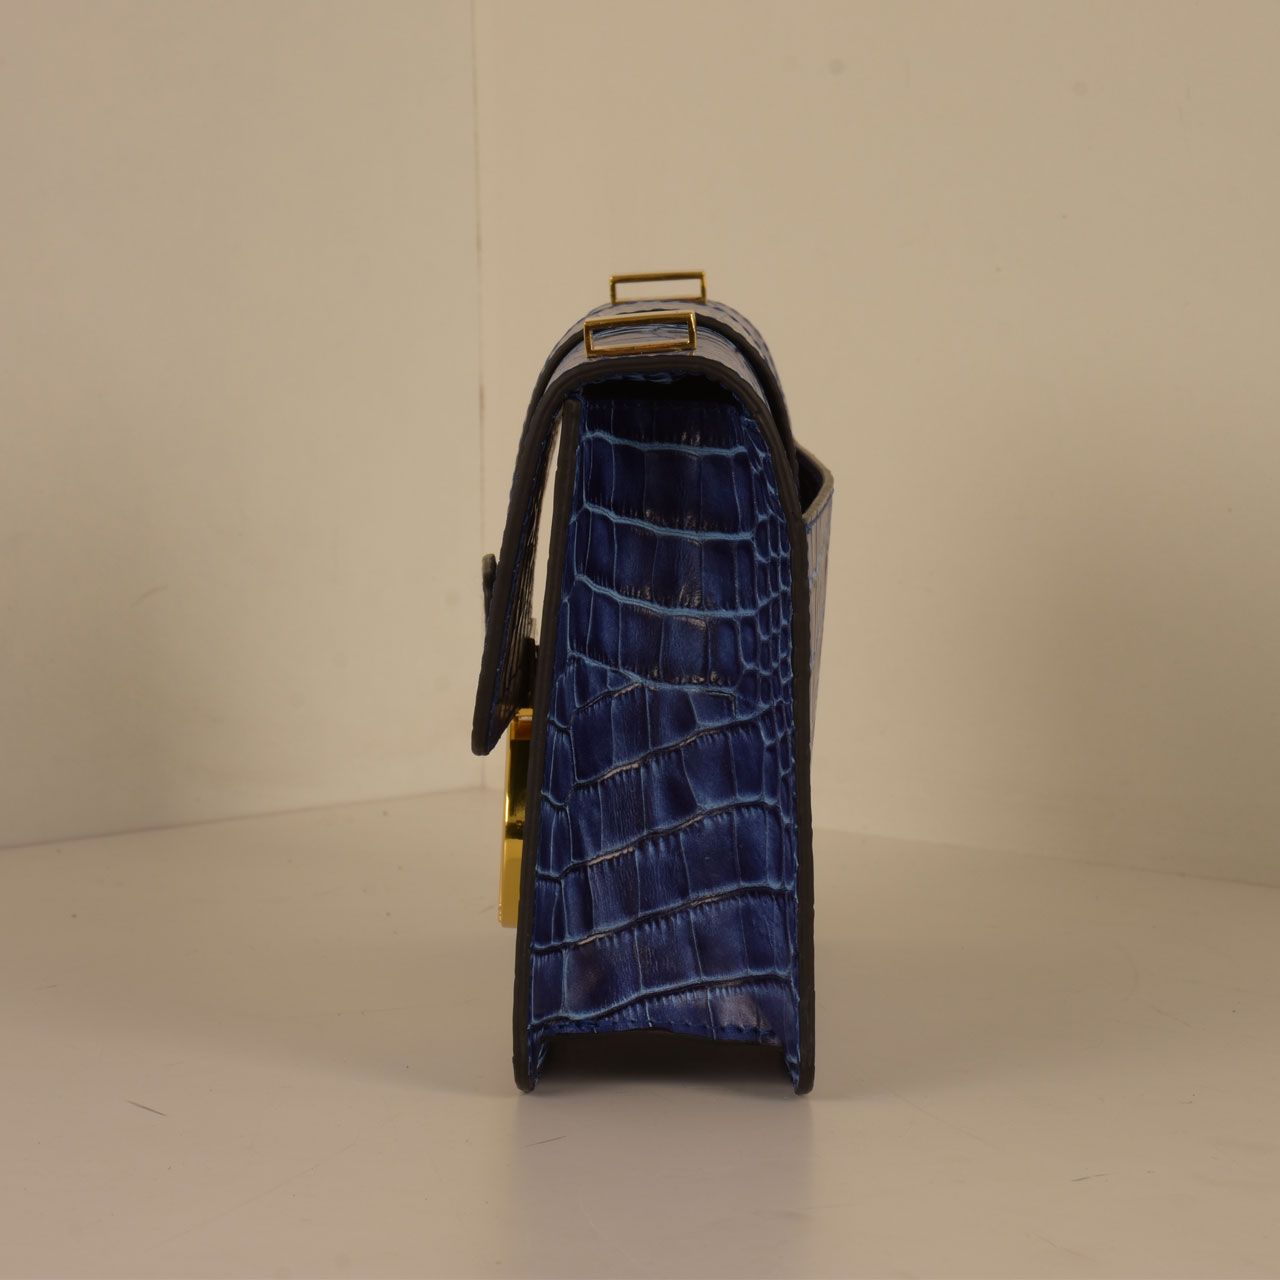 کیف دوشی زنانه کهن چرم کد v182 -  - 8